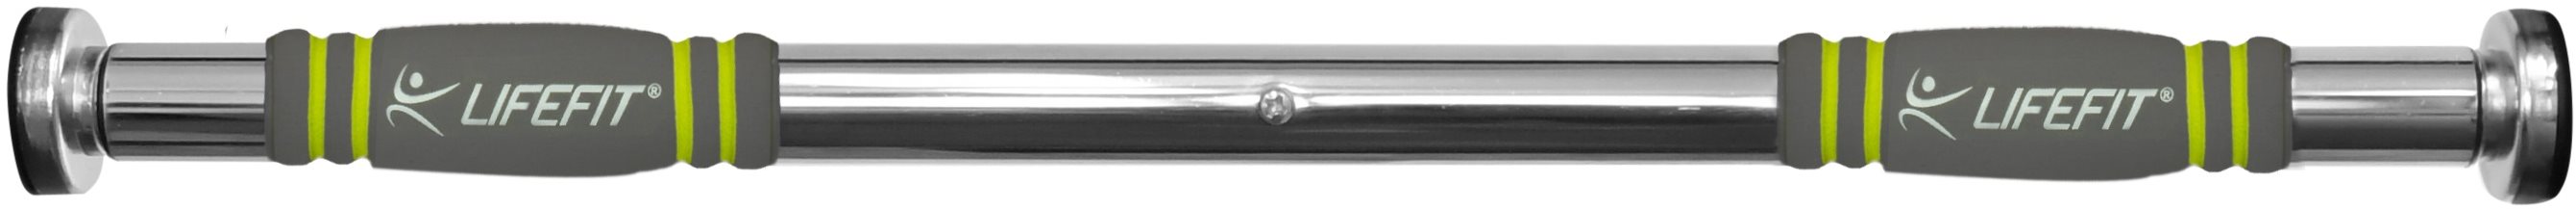 LifeFit univerzális ajtókeretbe, 59-92 cm